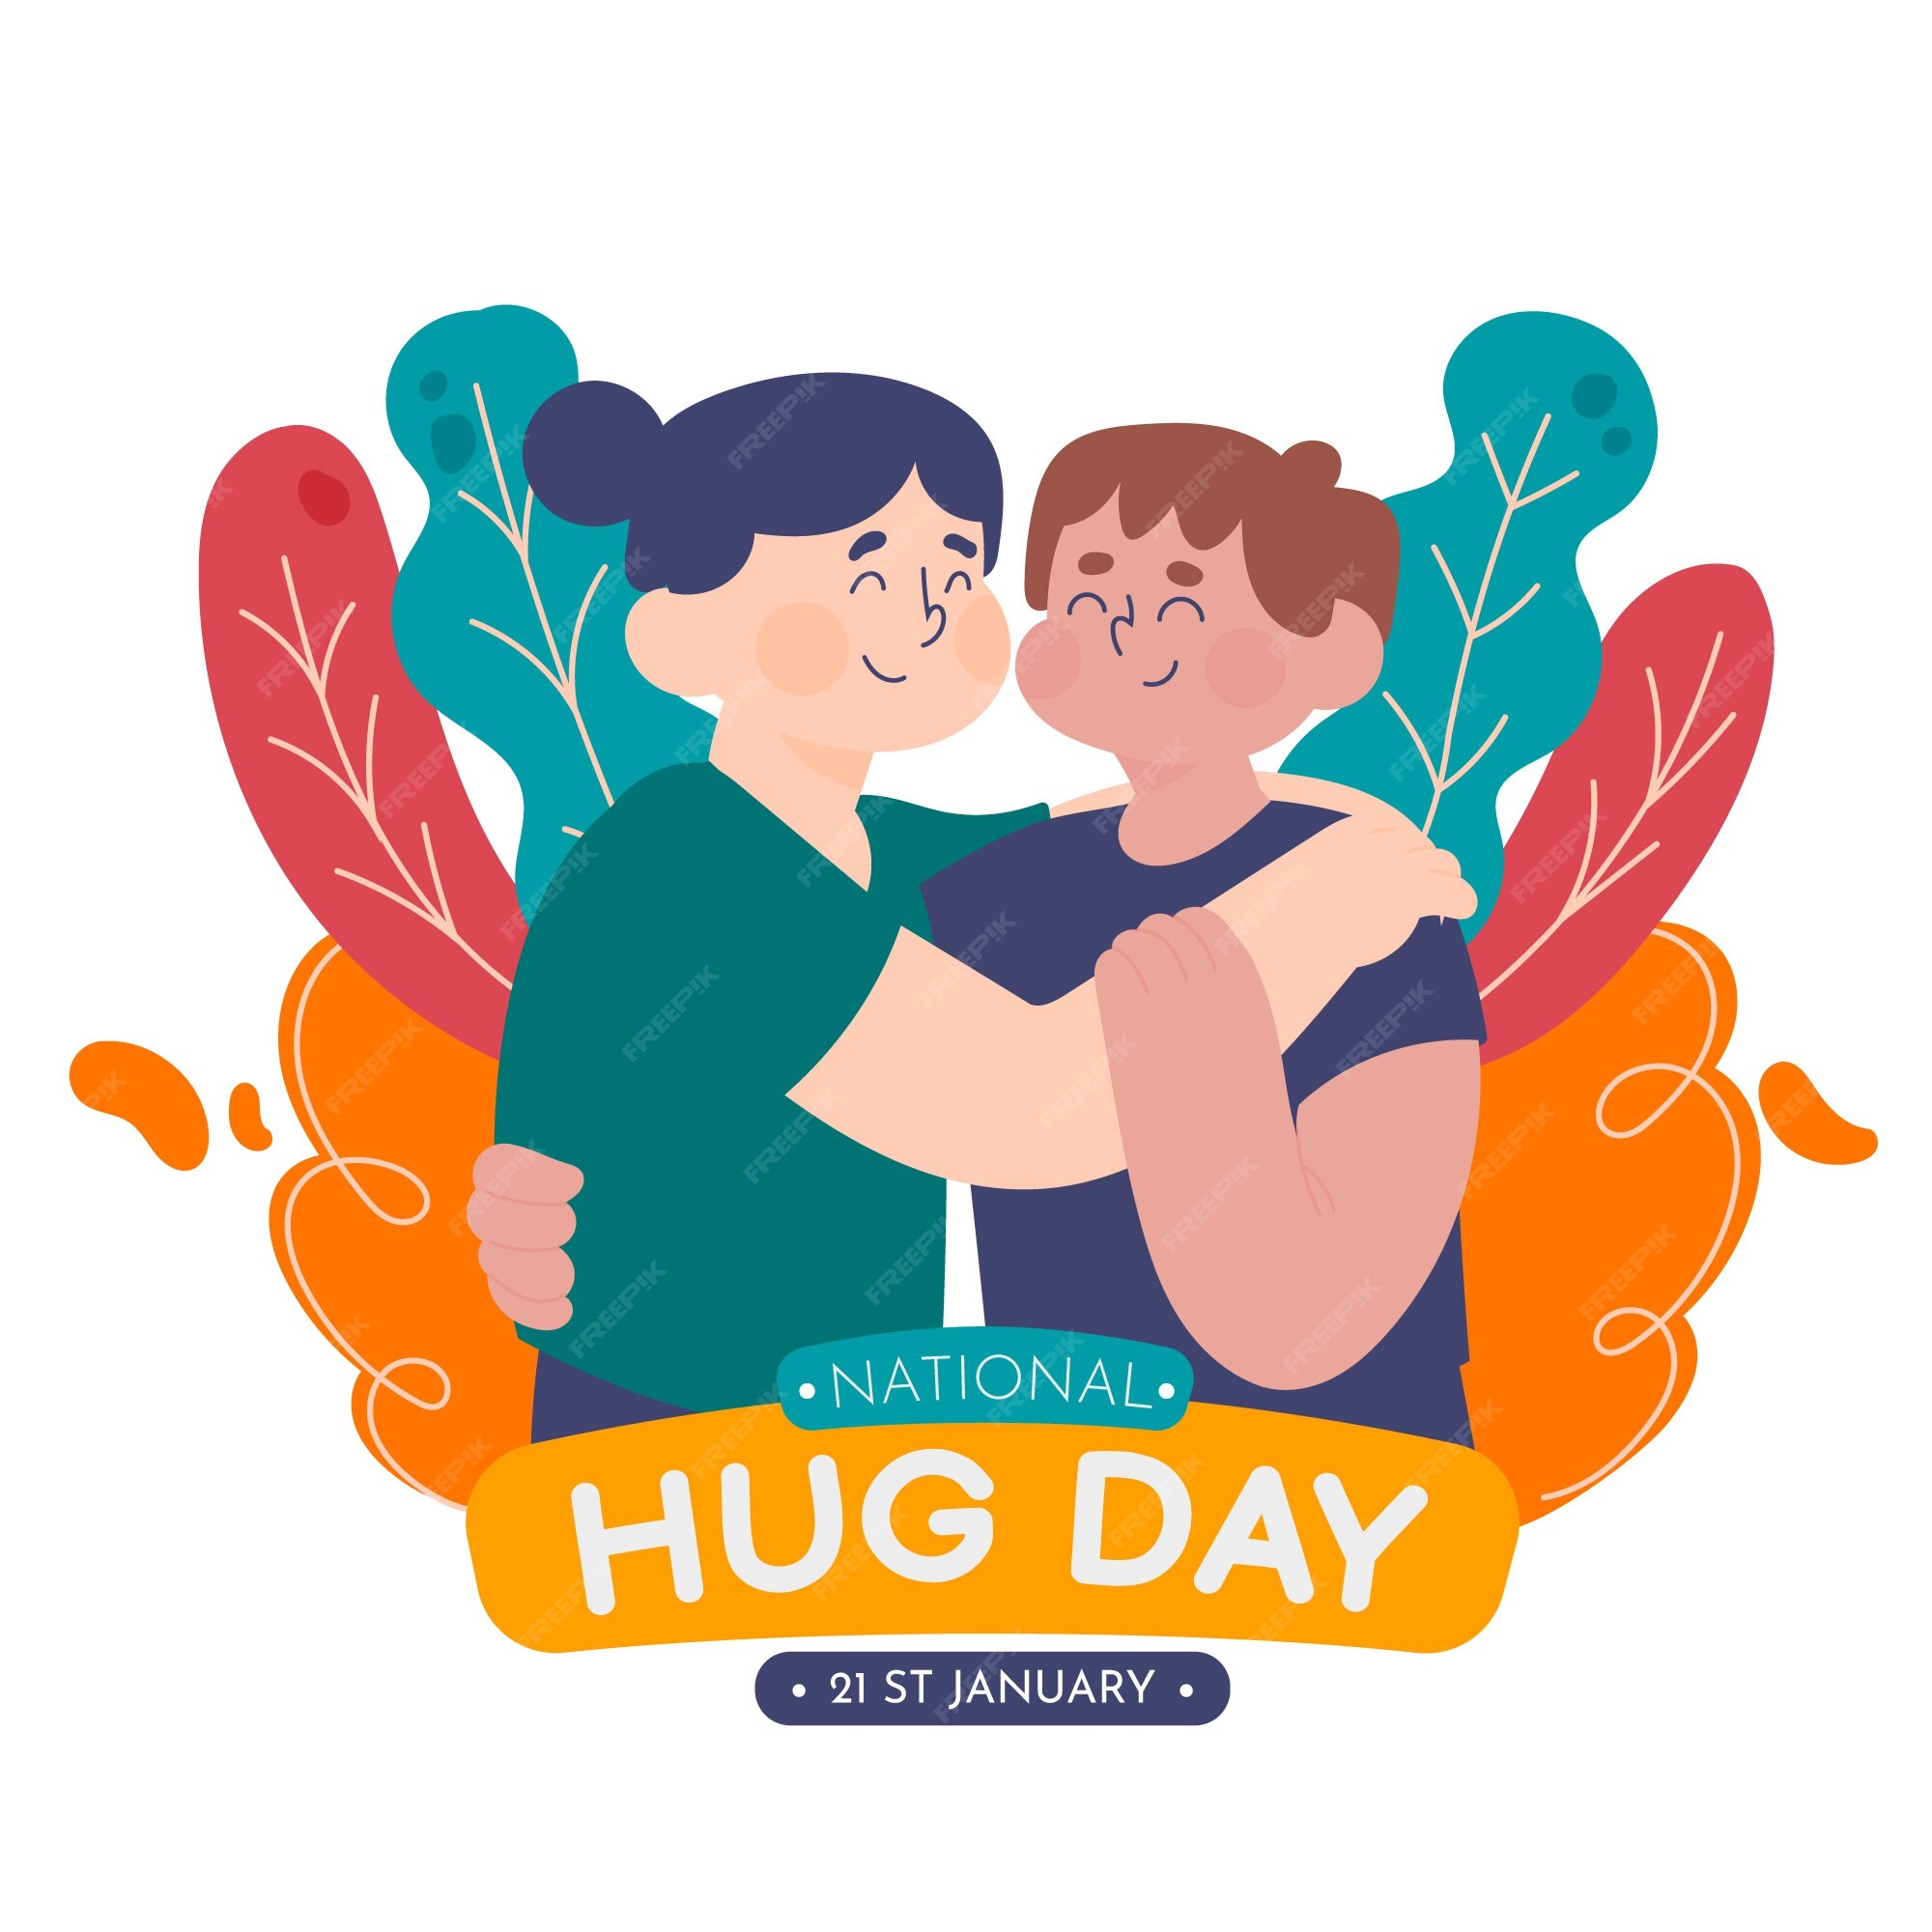 Hug Day Images - Free Download on Freepik